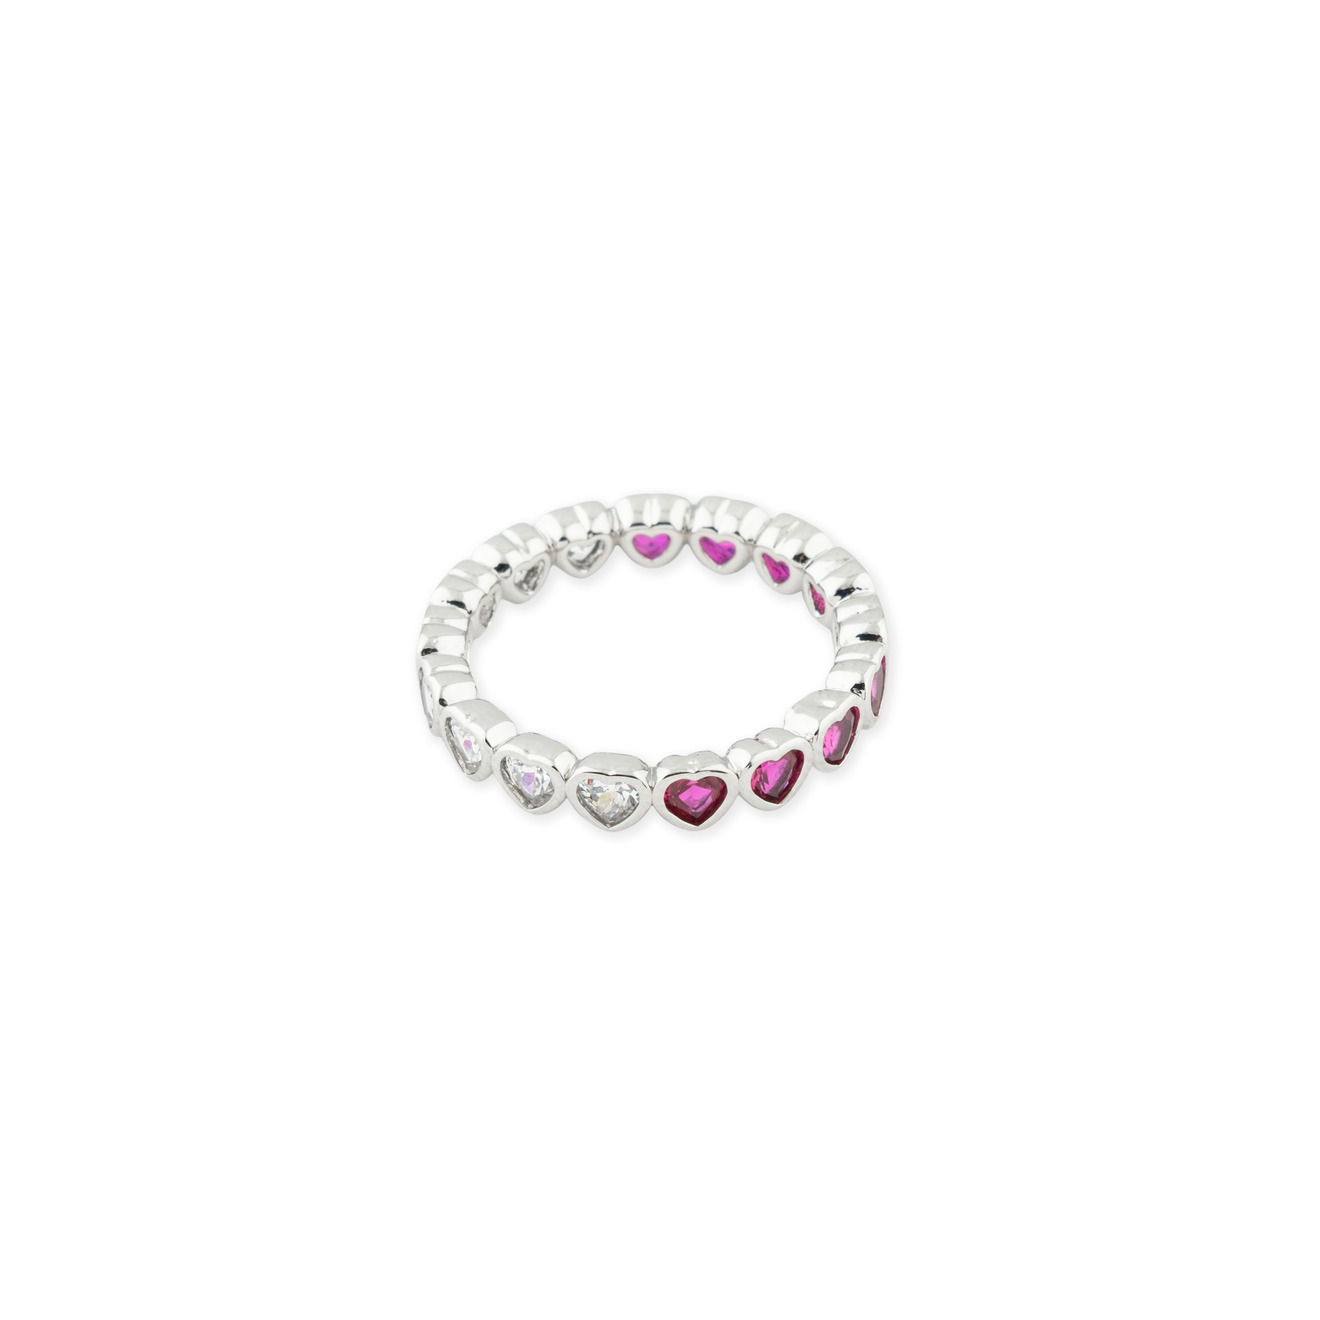 Herald Percy Серебристое кольцо из сердец с белыми и розовыми кристаллами herald percy серебристое колье с кристаллами в виде капель